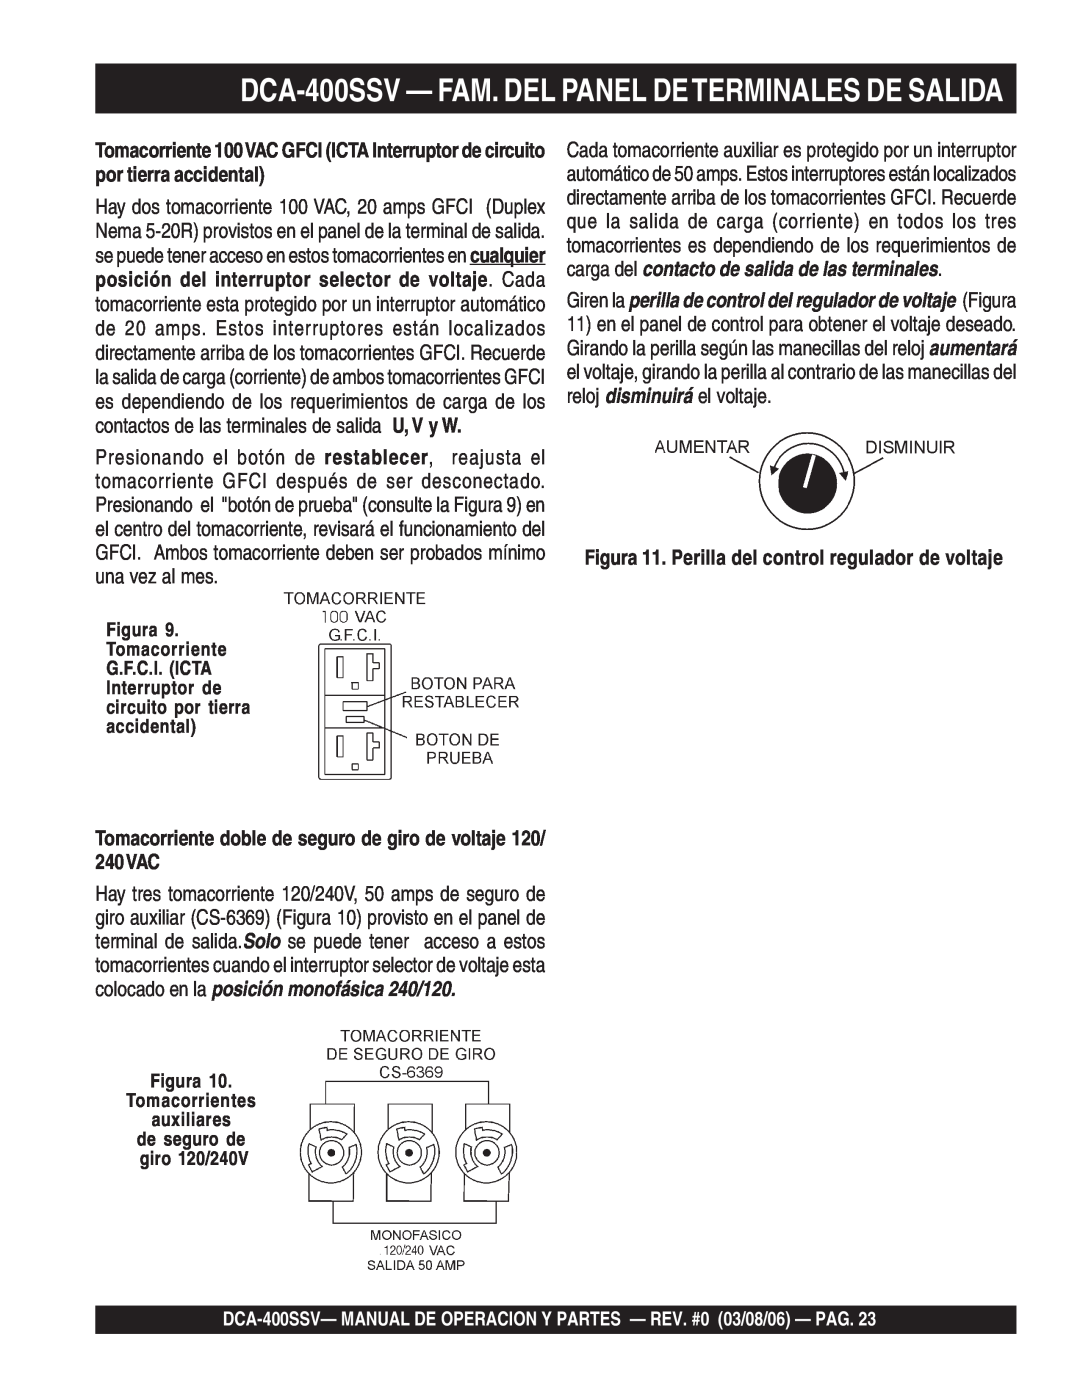 Multiquip operation manual DCA-400SSV— FAM. DEL PANEL DETERMINALES DE SALIDA, Figura Tomacorrientes auxiliares 